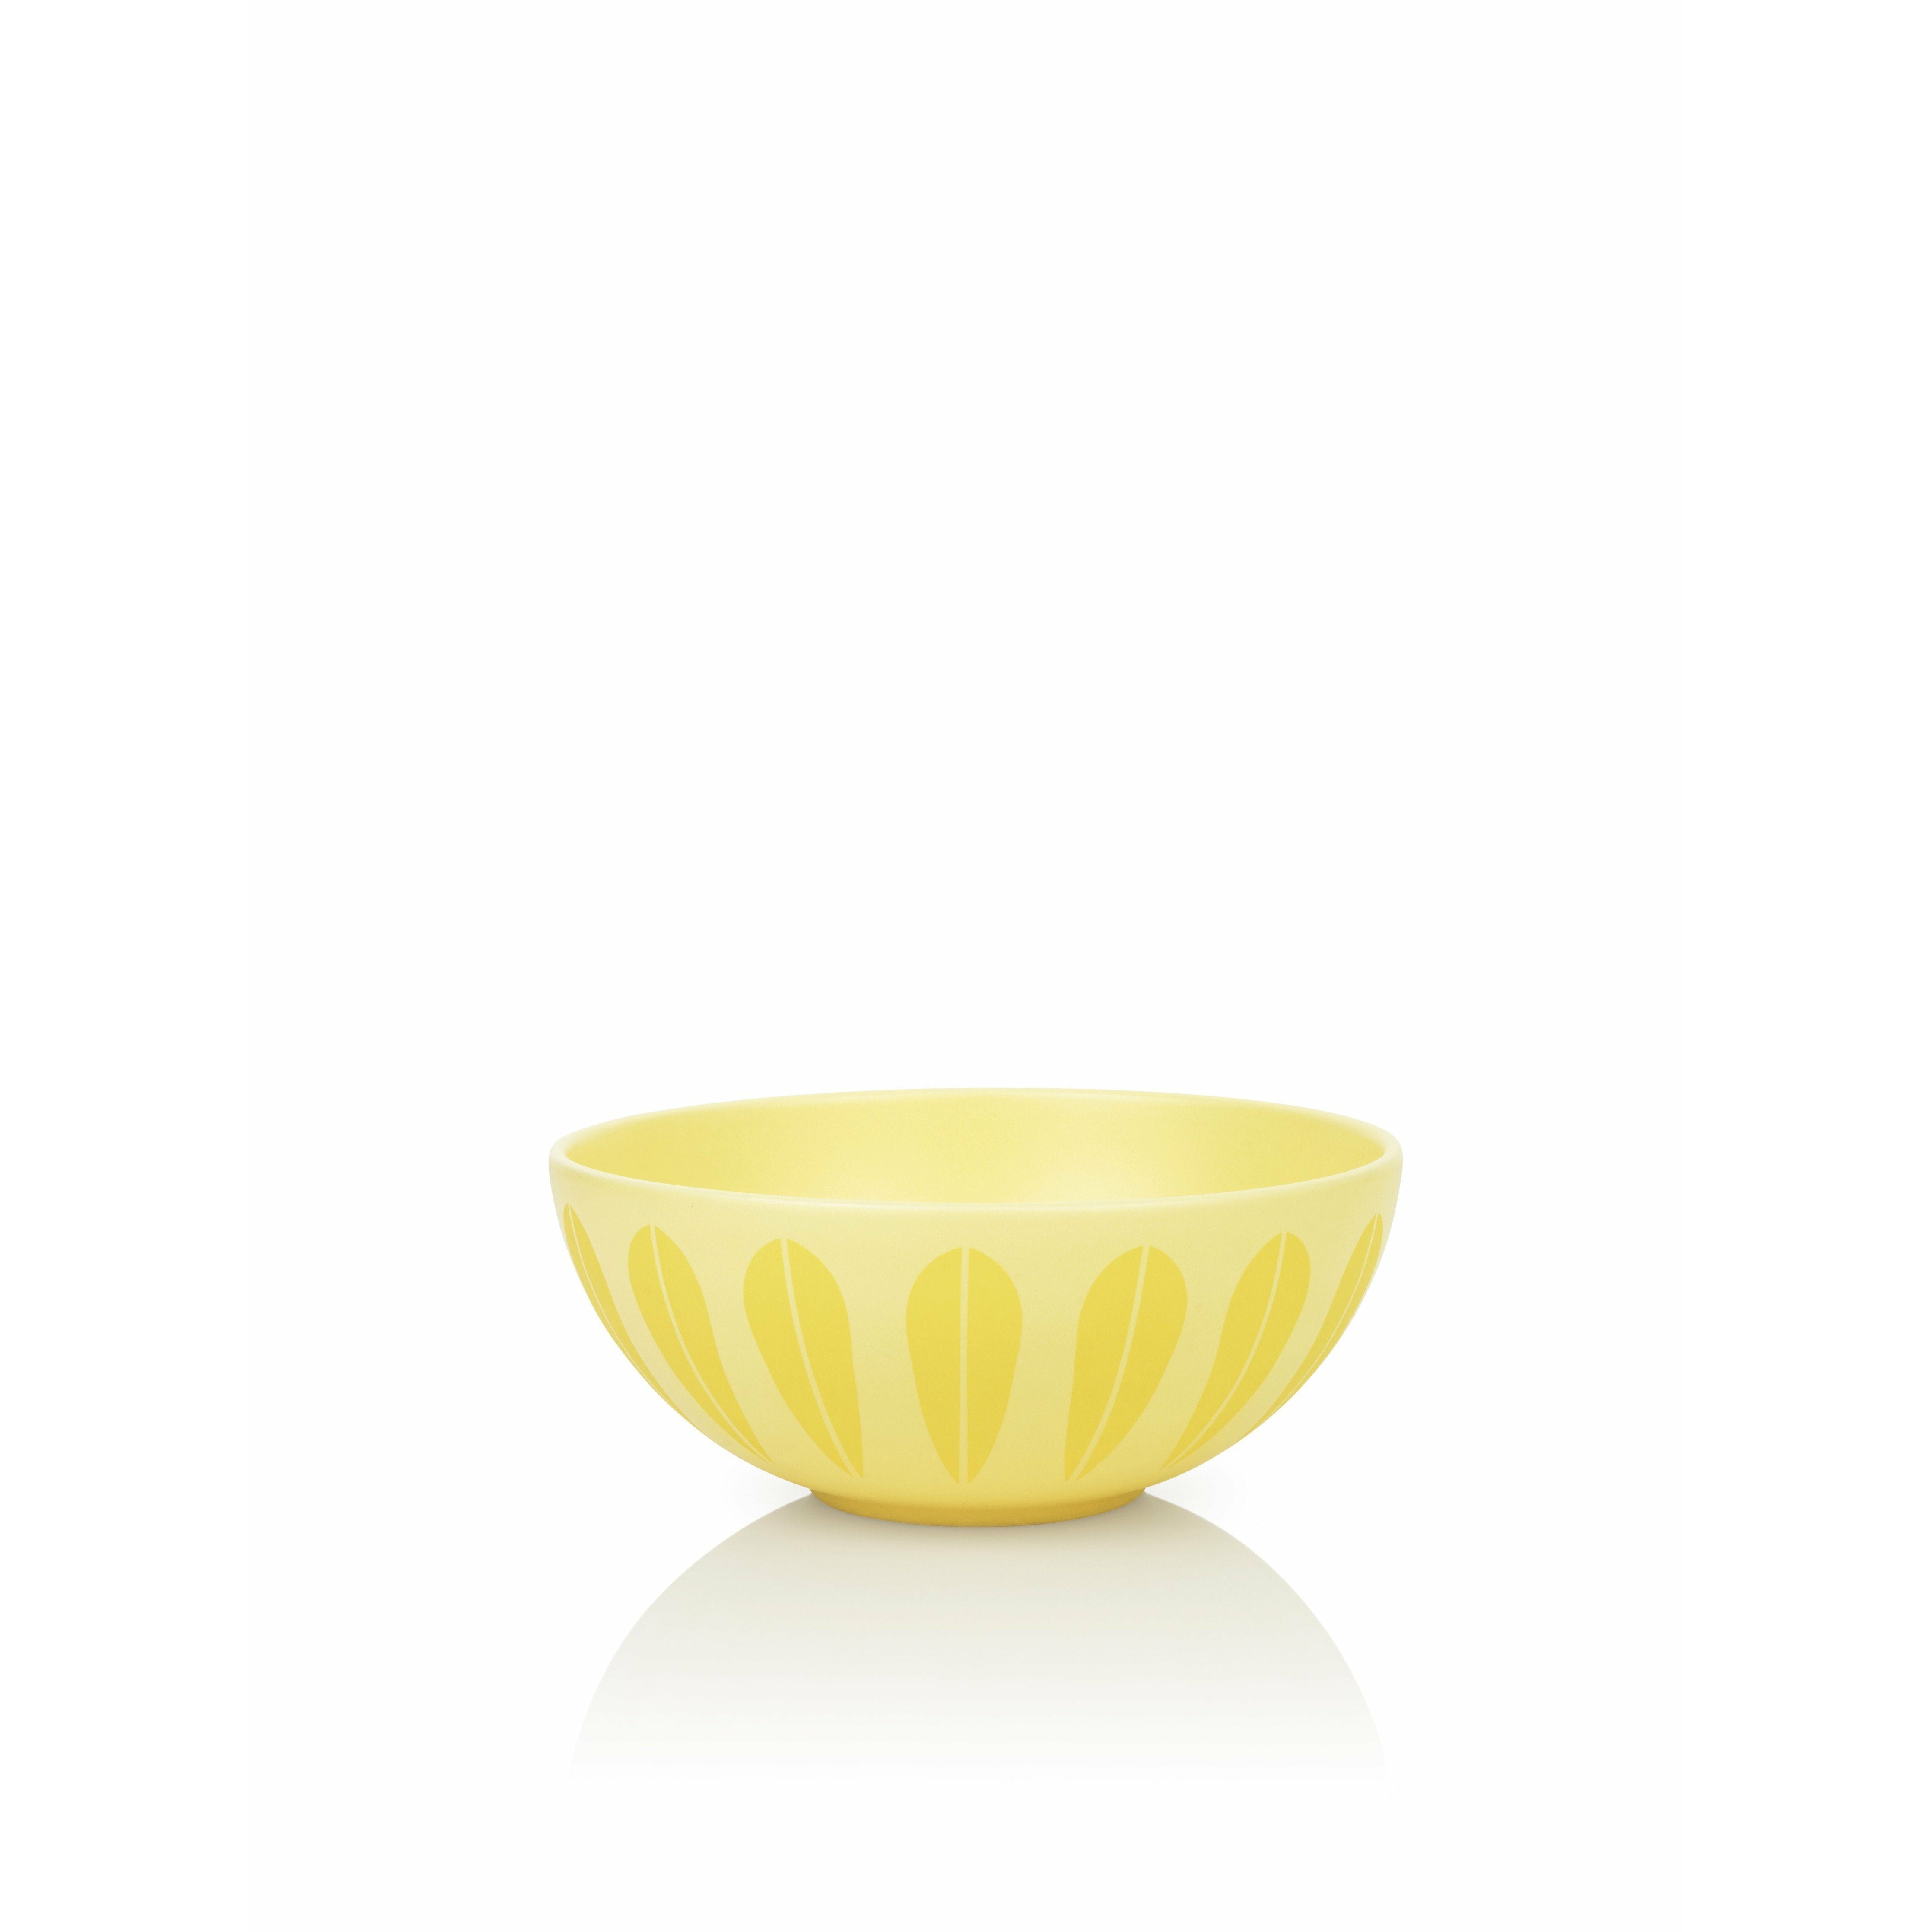 Lucie Kaas Arne Clausen Lotus Bowl žlutá, Ø24 cm